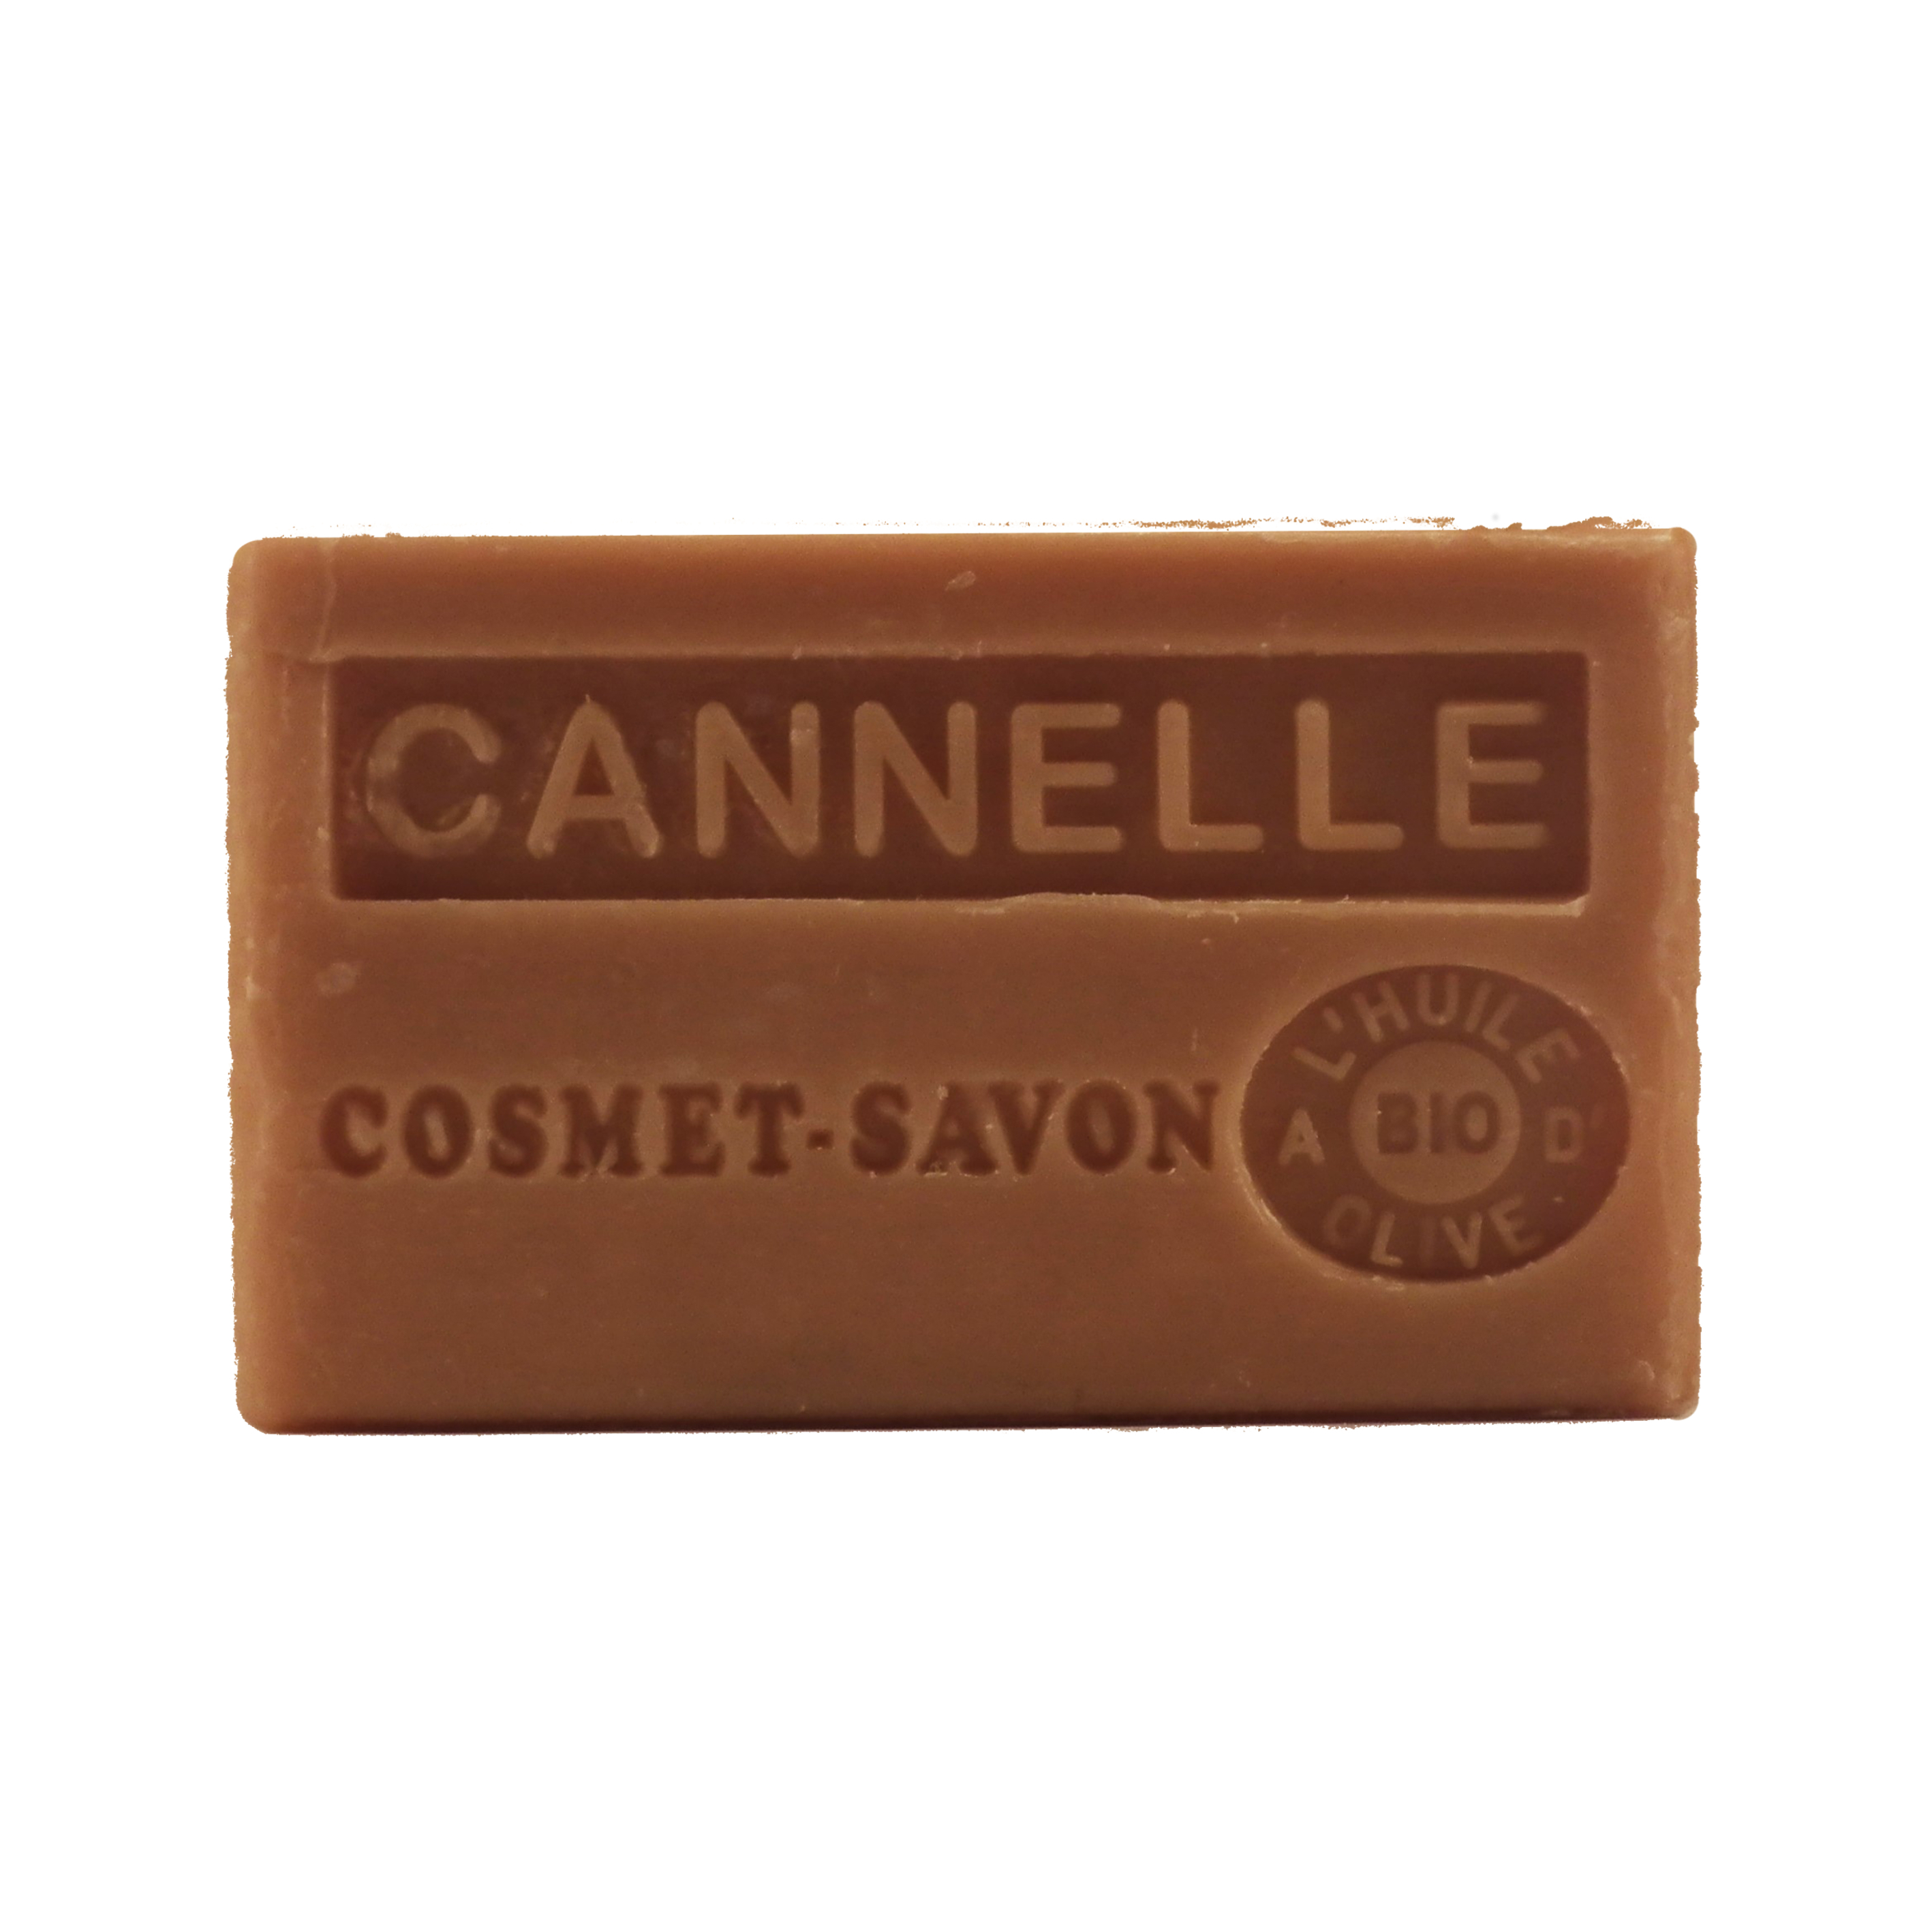 cannelle-savon-125gr-au-beurre-de-karite-bio-cosmet-savon-3665205006164-face-JPEG